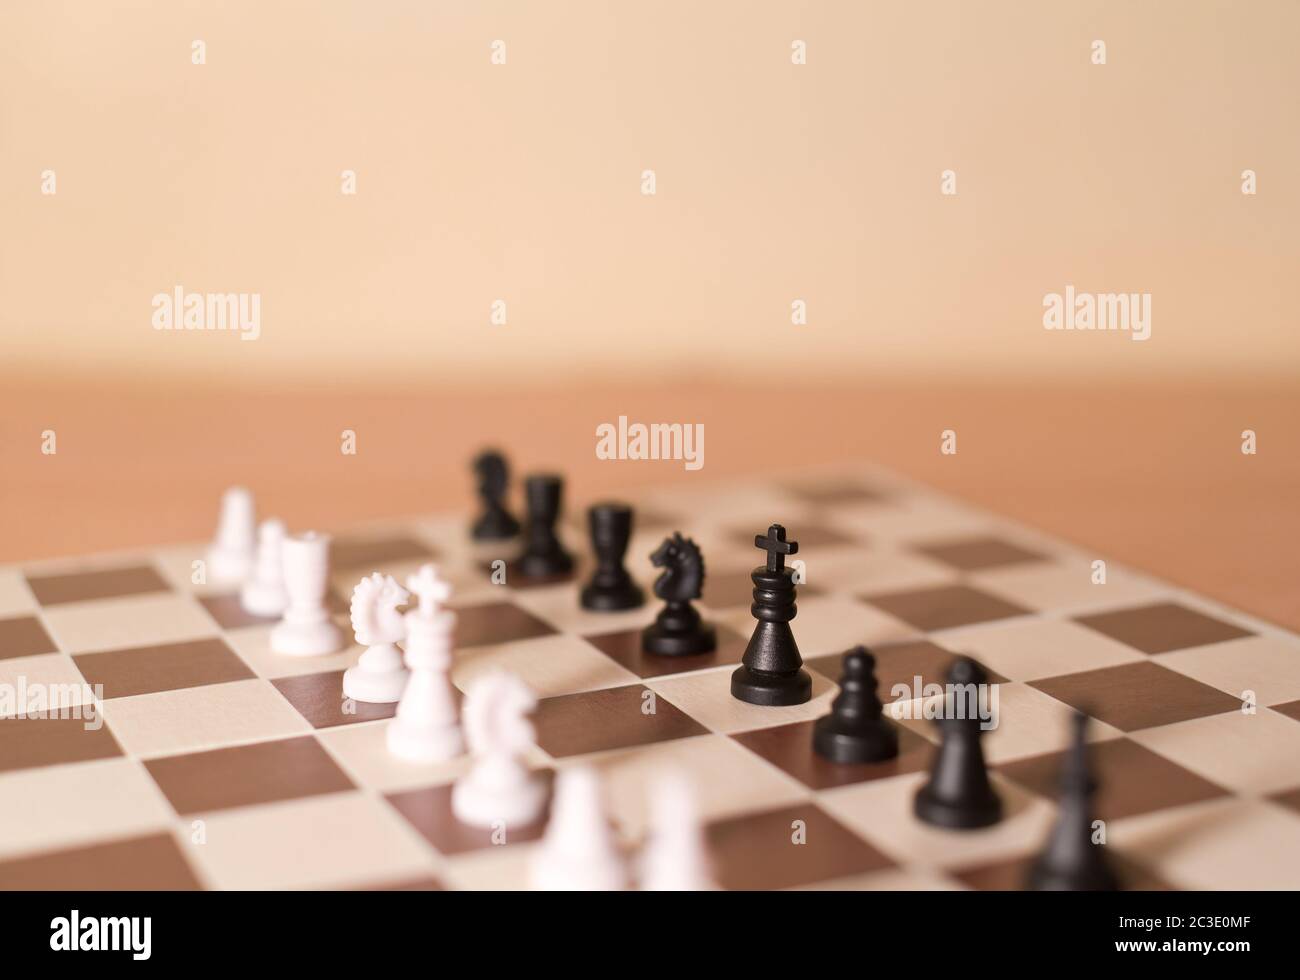 Schachfiguren als Metapher - Rivalität, Teams von schwarzen und weißen Stücken stehen einander gegenüber Stockfoto